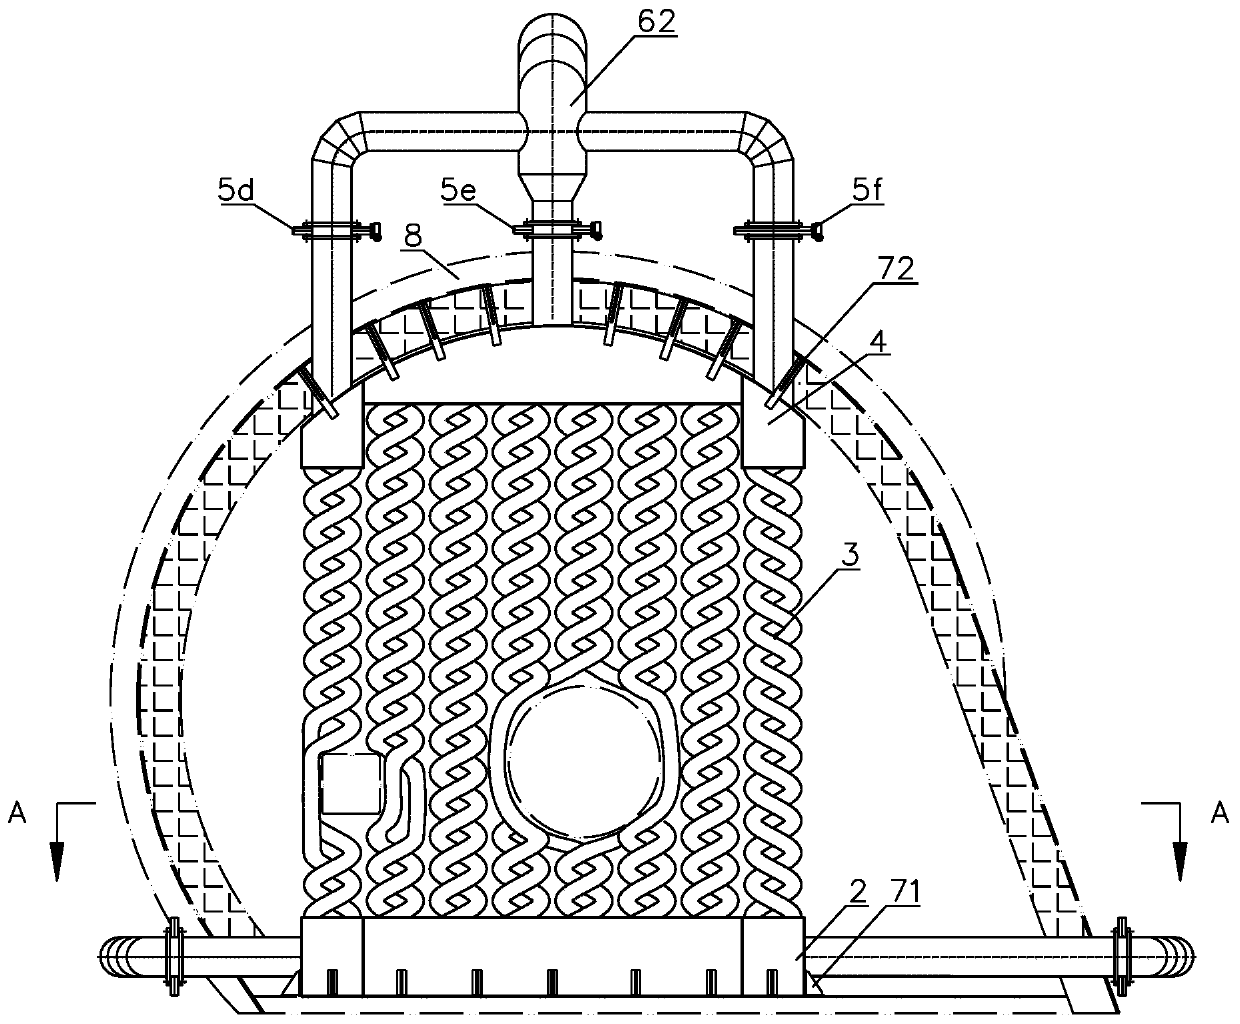 Heat exchange device applied into kiln head hood of rotary kiln